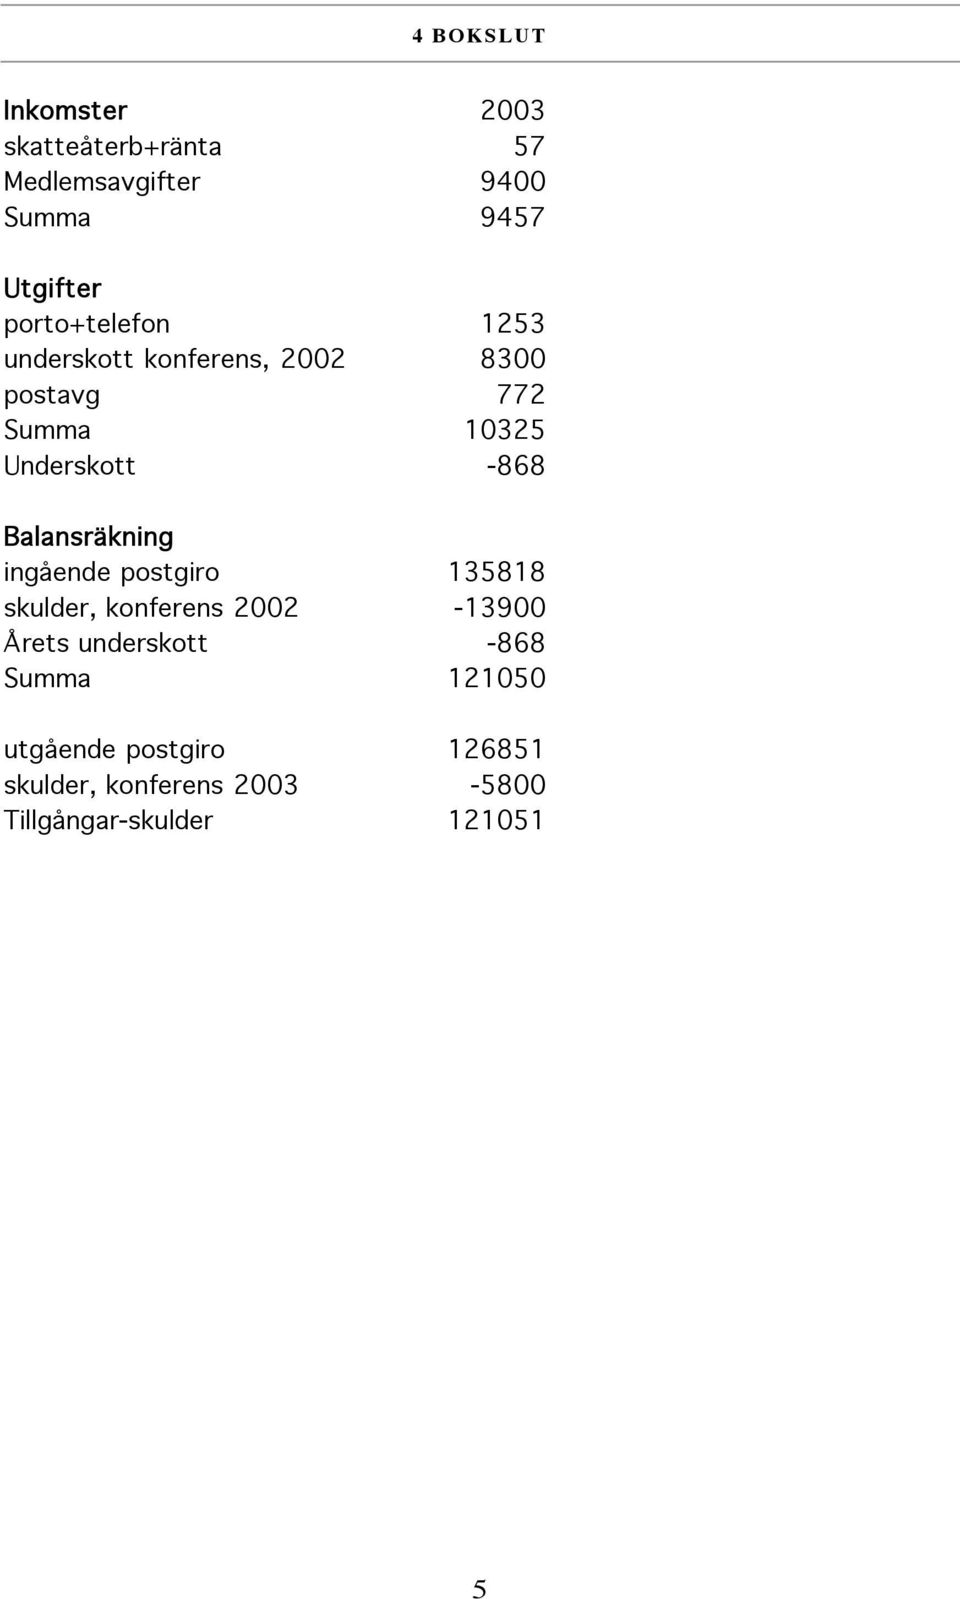 Balansräkning ingående postgiro 135818 skulder, konferens 2002-13900 Årets underskott -868